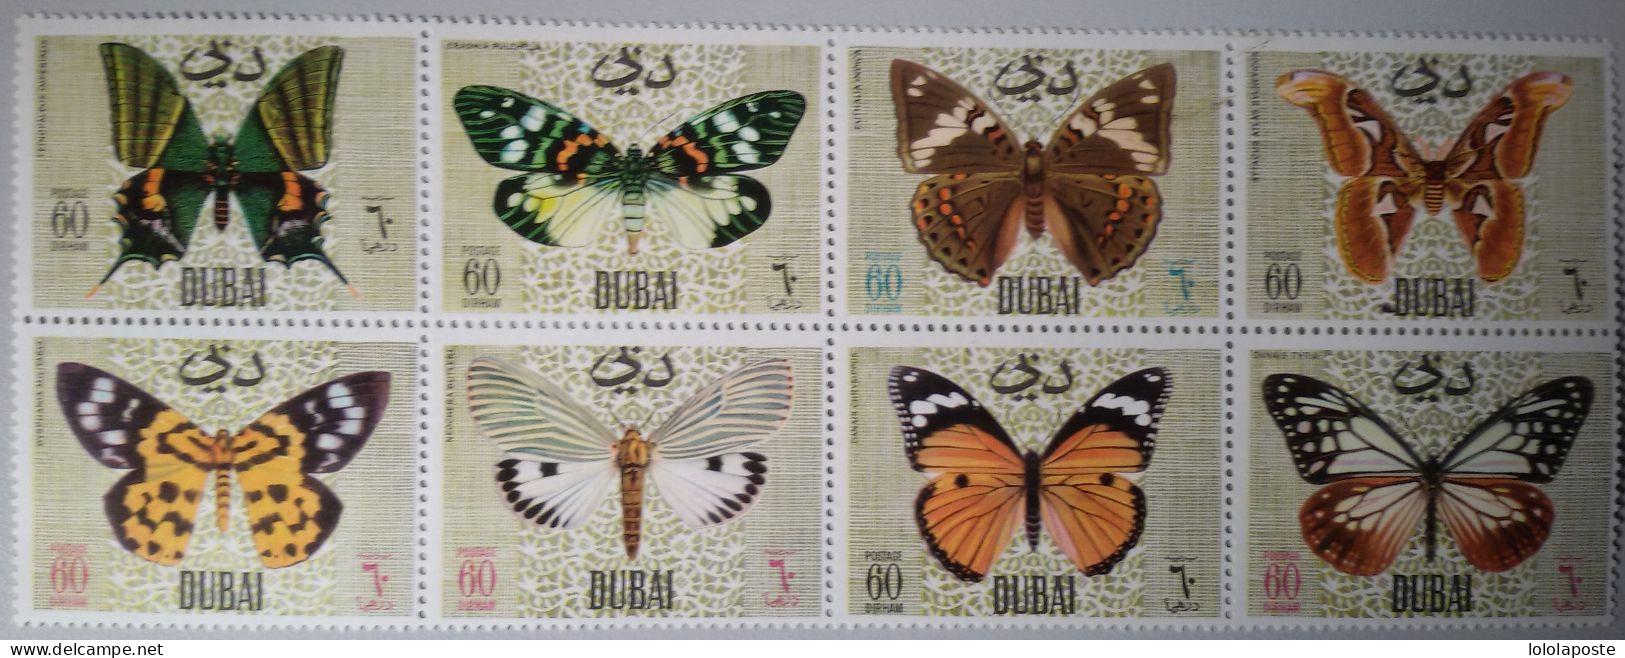 THEME PAPILLONS - BUTTERFLIES - DUBAI - Bloc De 8 Timbres Différents - Butterflies